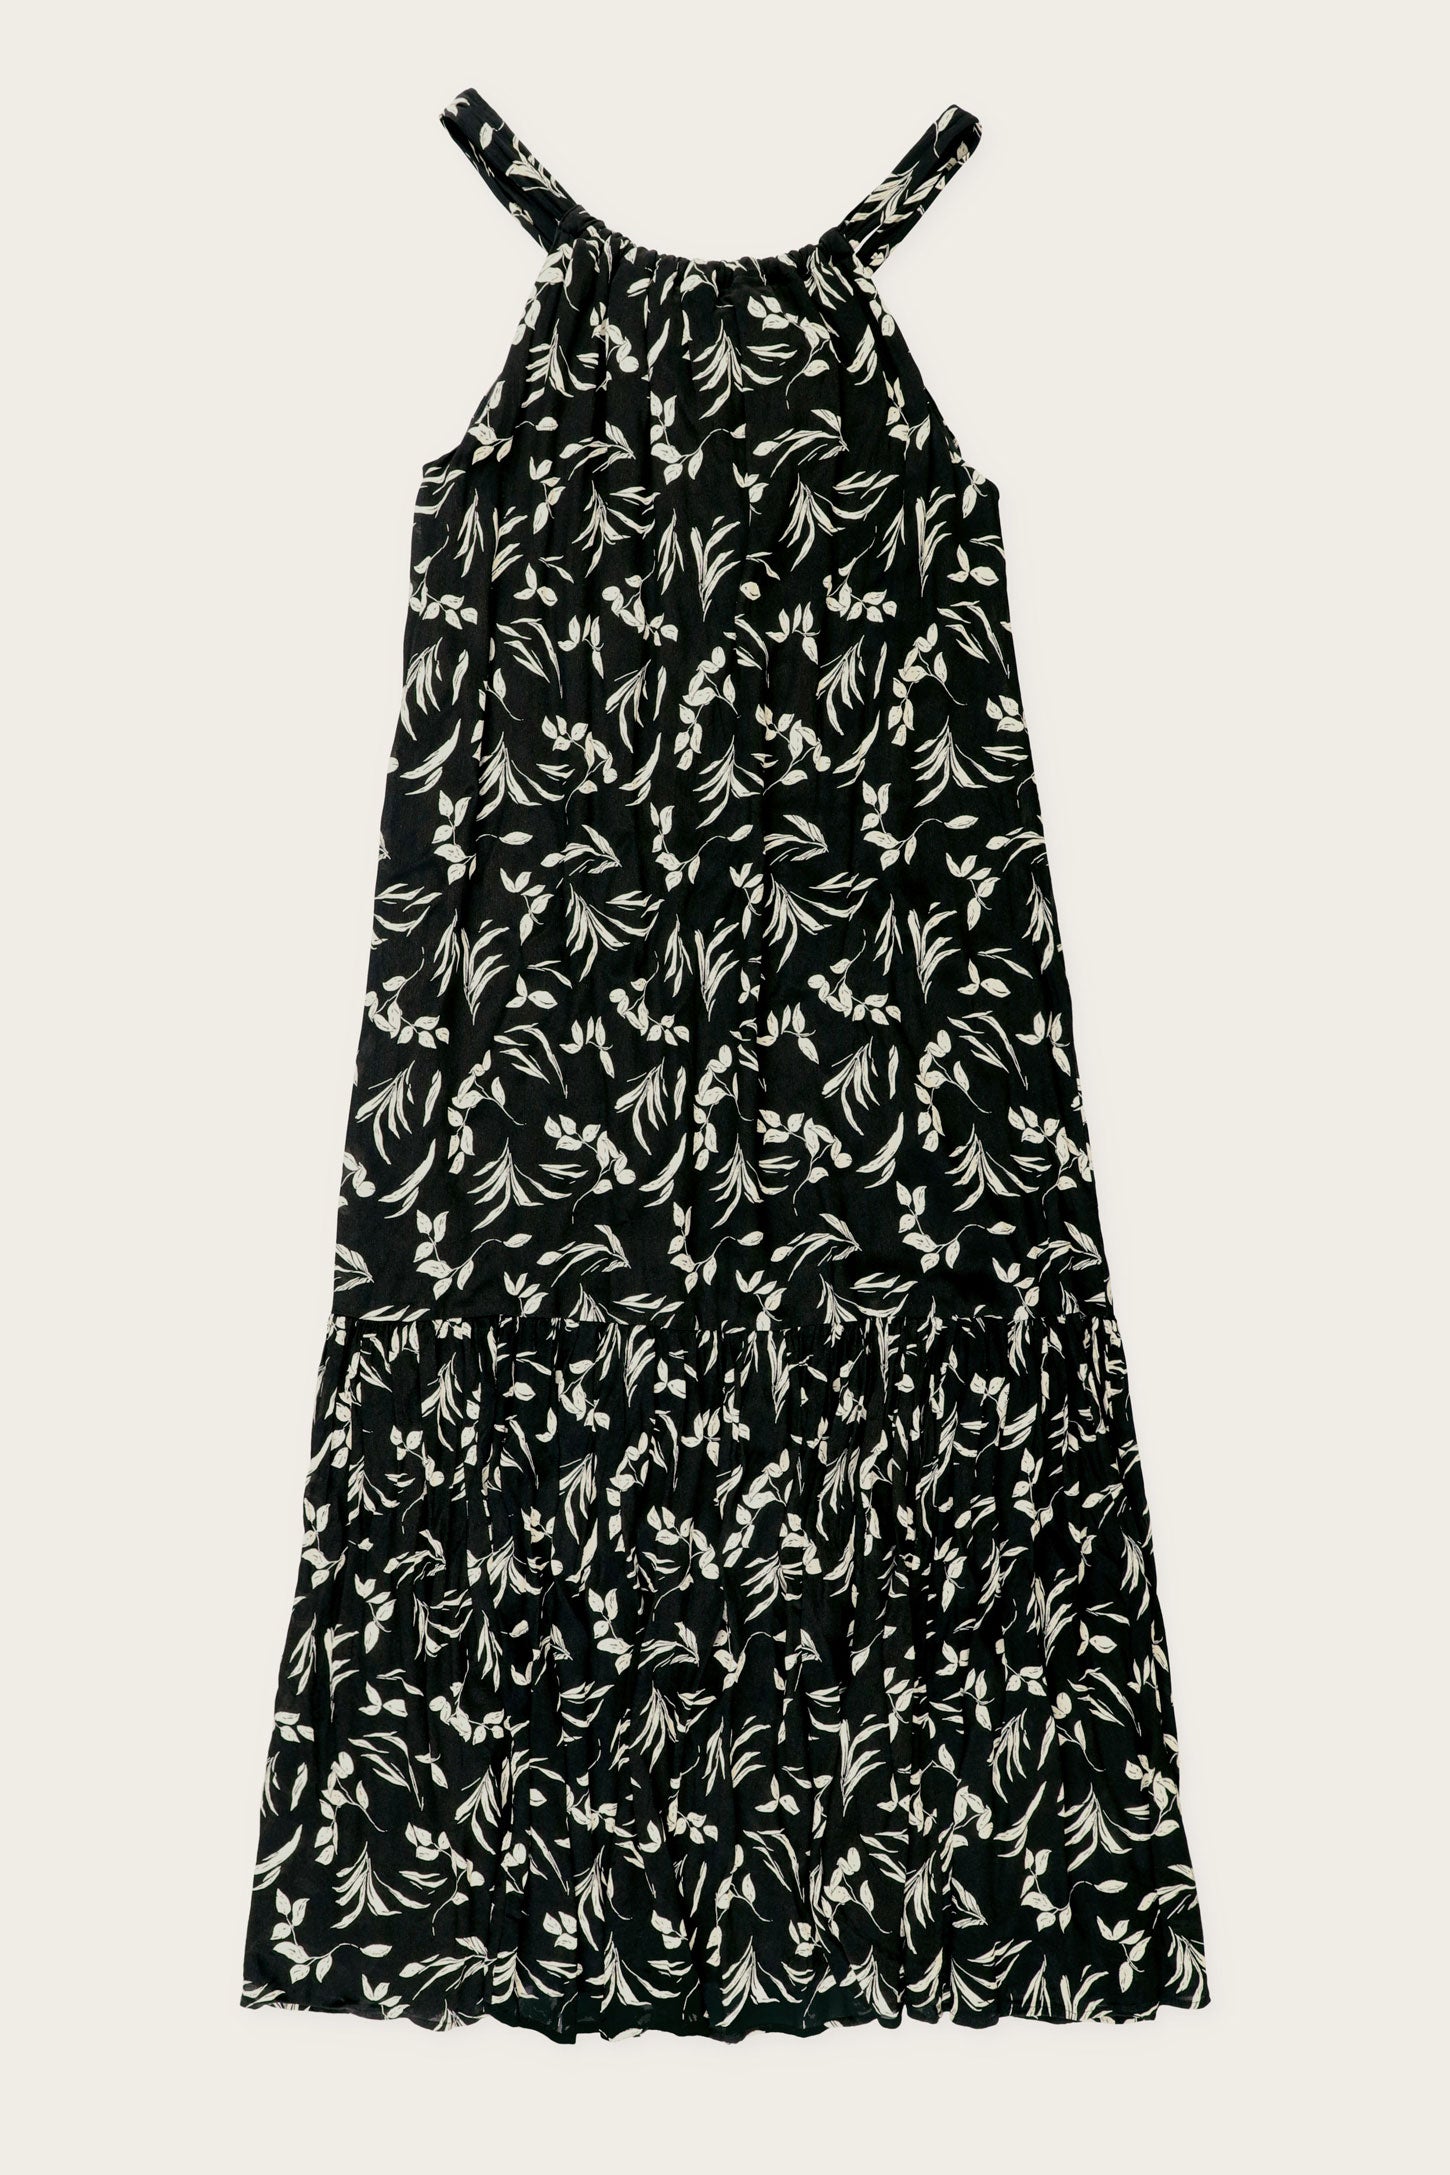 Robe halter coupe ligne A imprimé floral - Femme && NOIR/BLANC